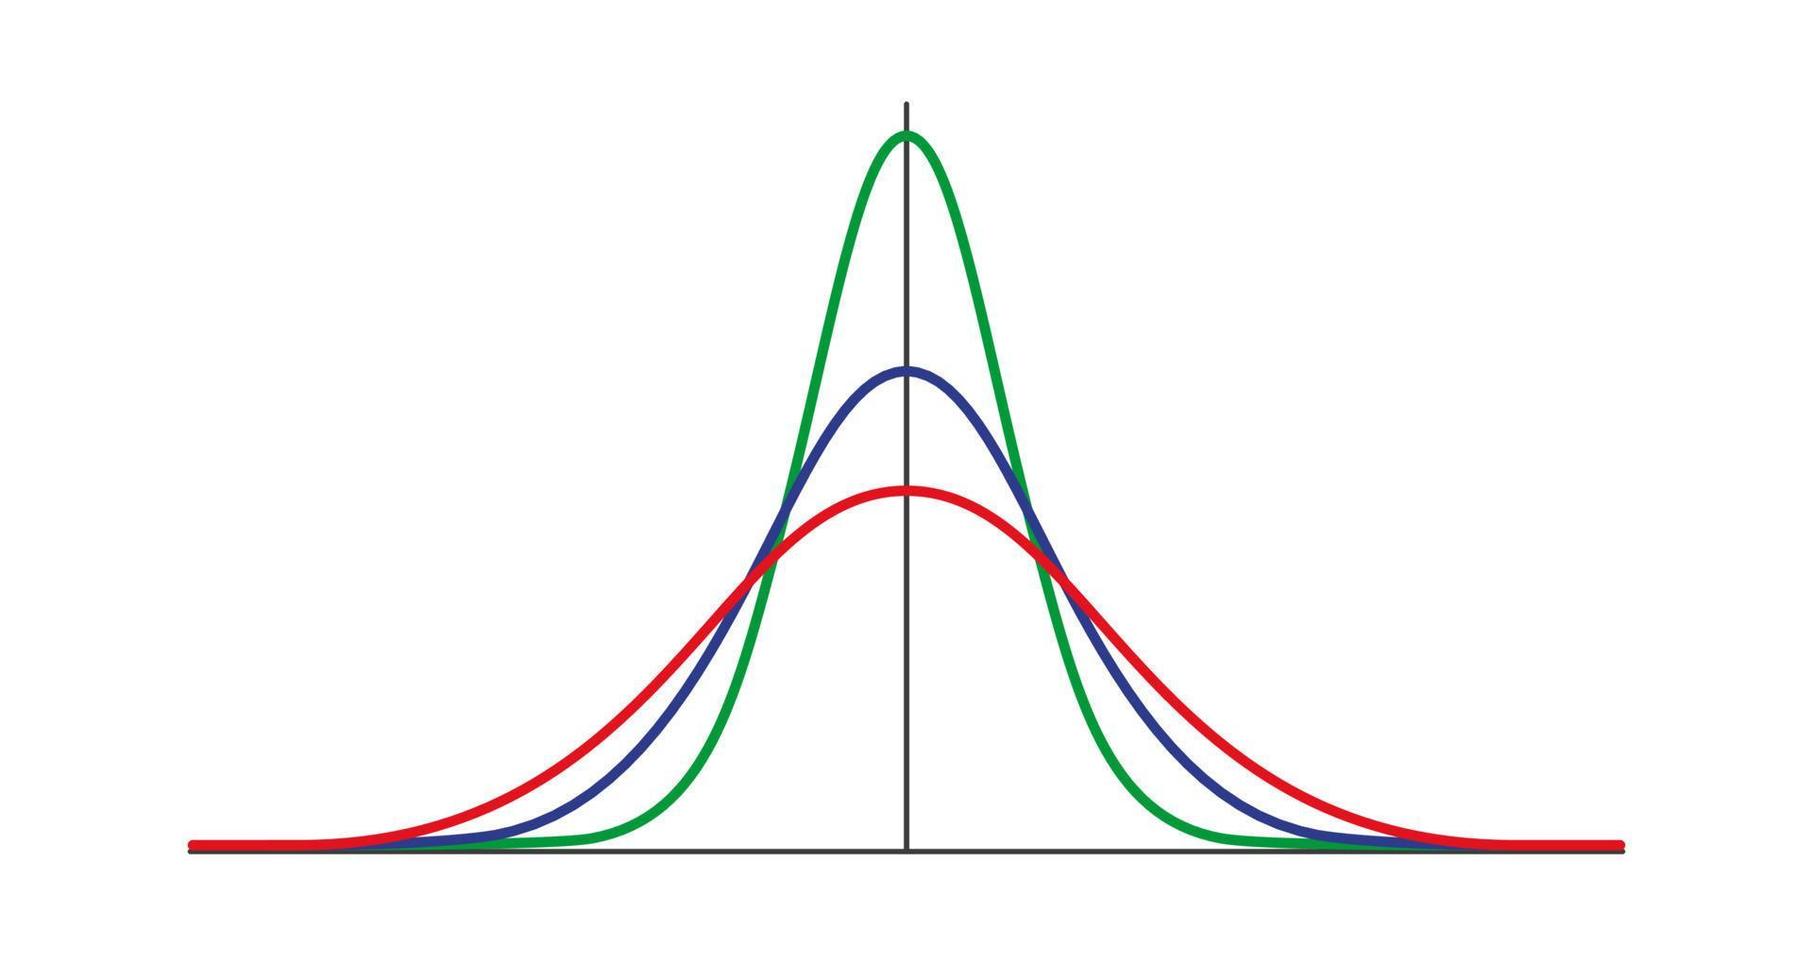 Gauss-verdeling. standaard normale verdeling. gaussiaanse belgrafiekcurve. bedrijfs- en marketingconcept. wiskundige waarschijnlijkheidstheorie. bewerkbare streek. vectorillustratie geïsoleerd op een witte achtergrond vector